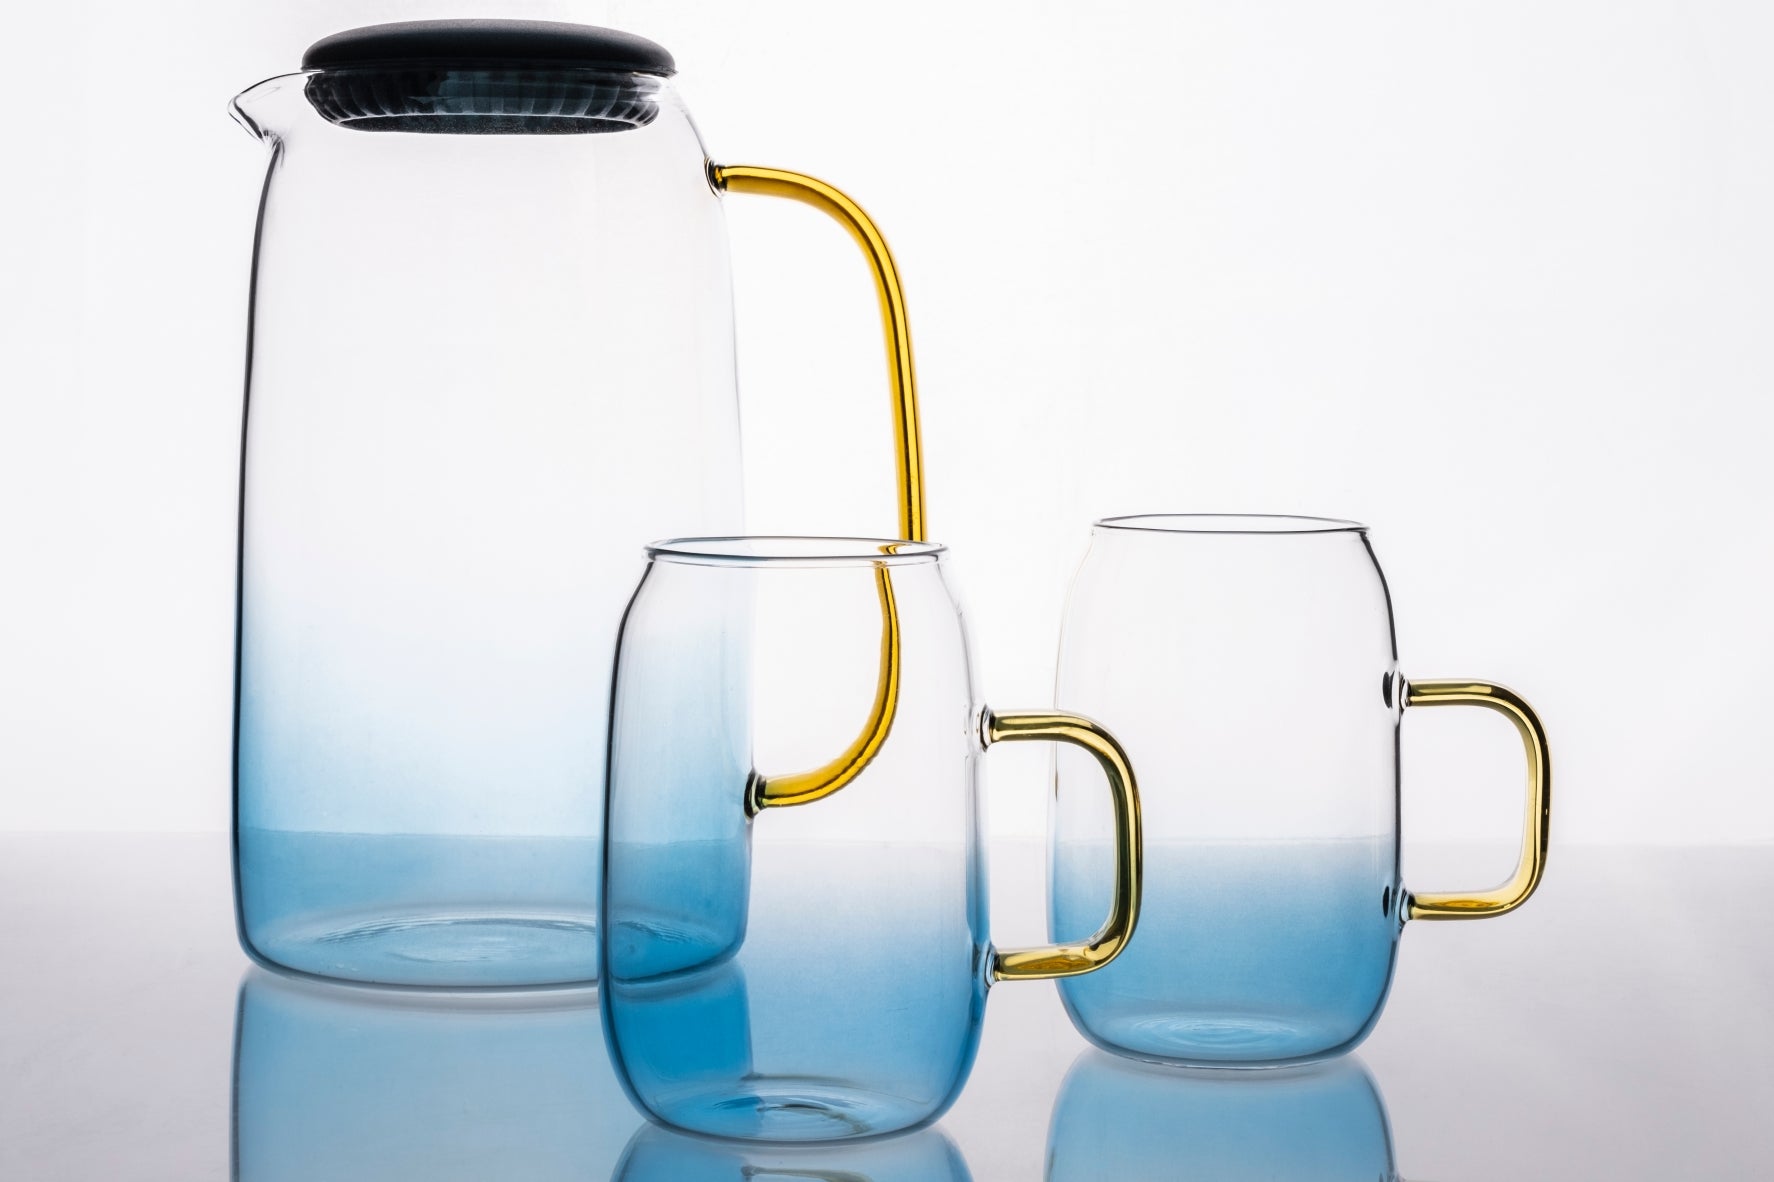 cloudland glass water jug set / water carafe set